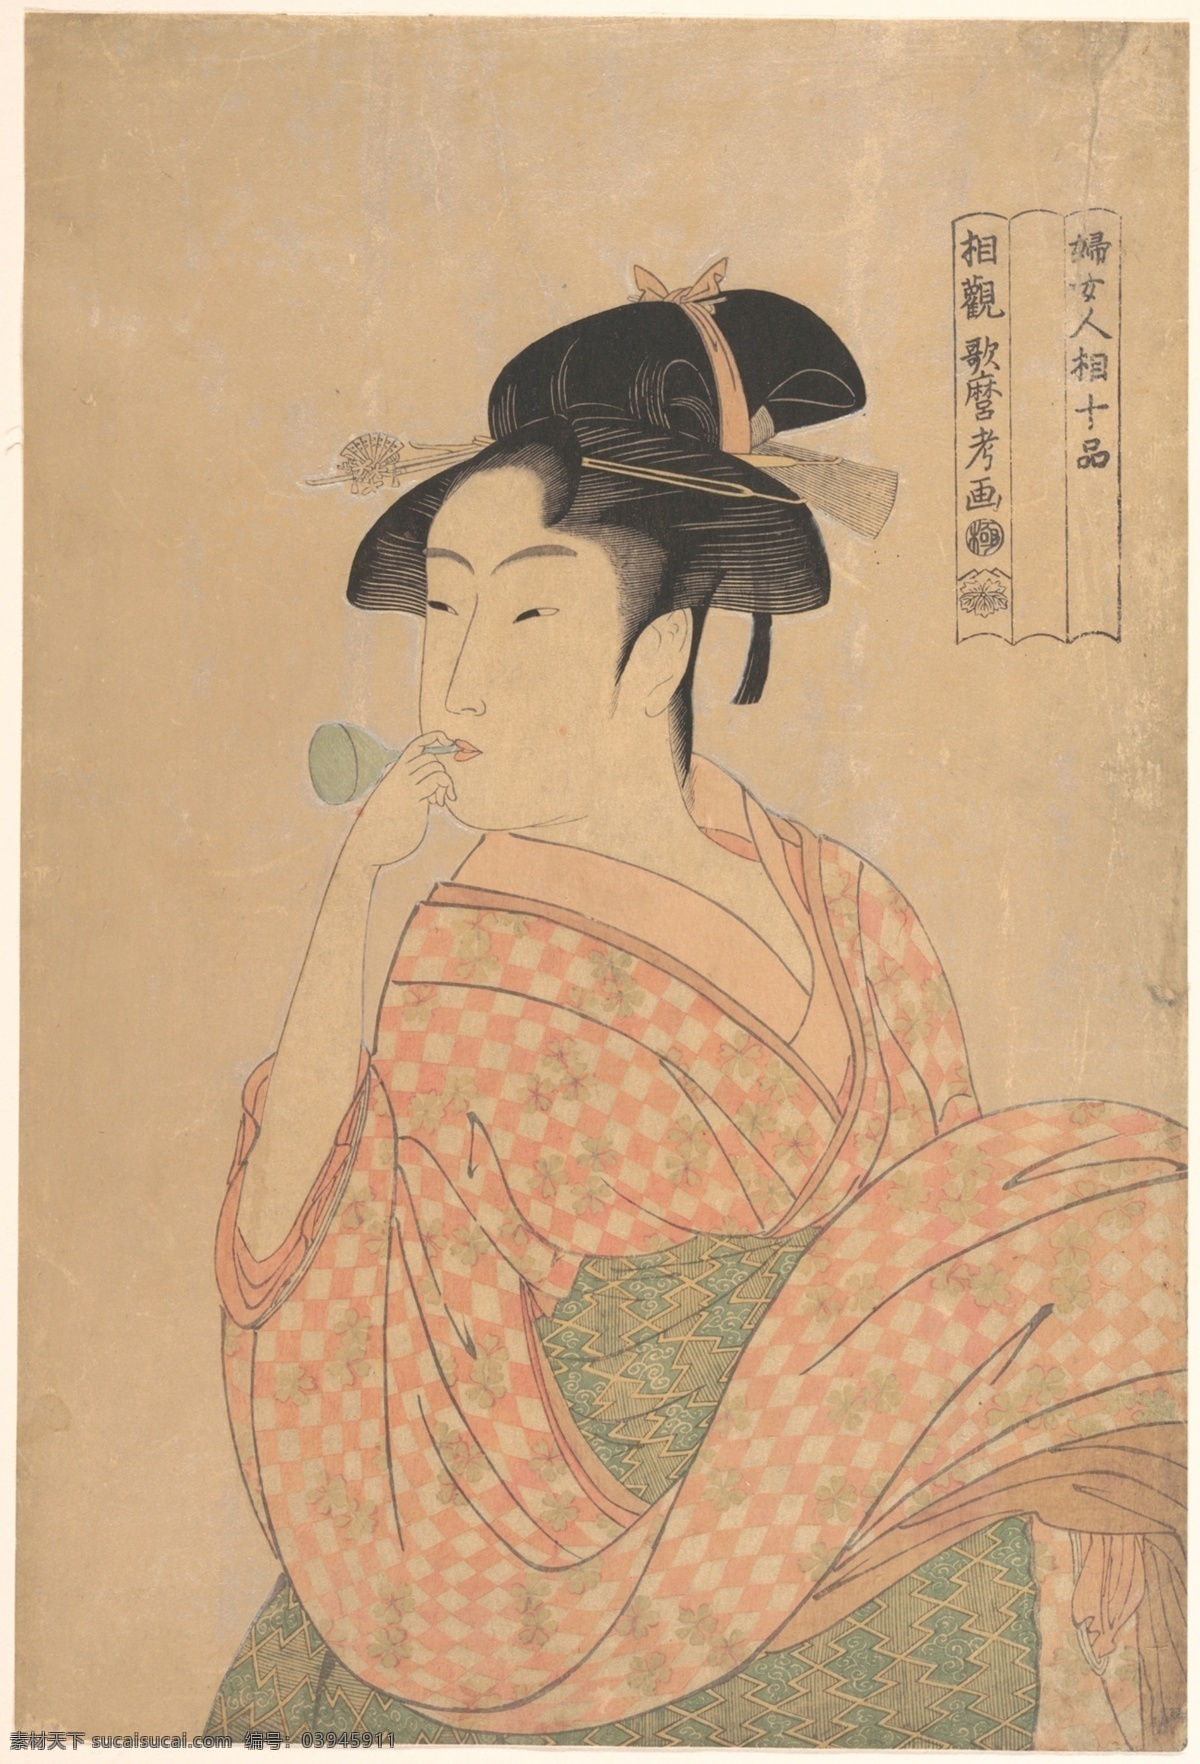 日本浮世绘 日本名画 浮世绘 浮世绘绘画 浮世绘设计 浮世绘人物 歌姬 舞女 日本歌姬 日本舞女 日本人物 装饰画 世界名画 文化艺术 绘画书法 喜多川歌磨